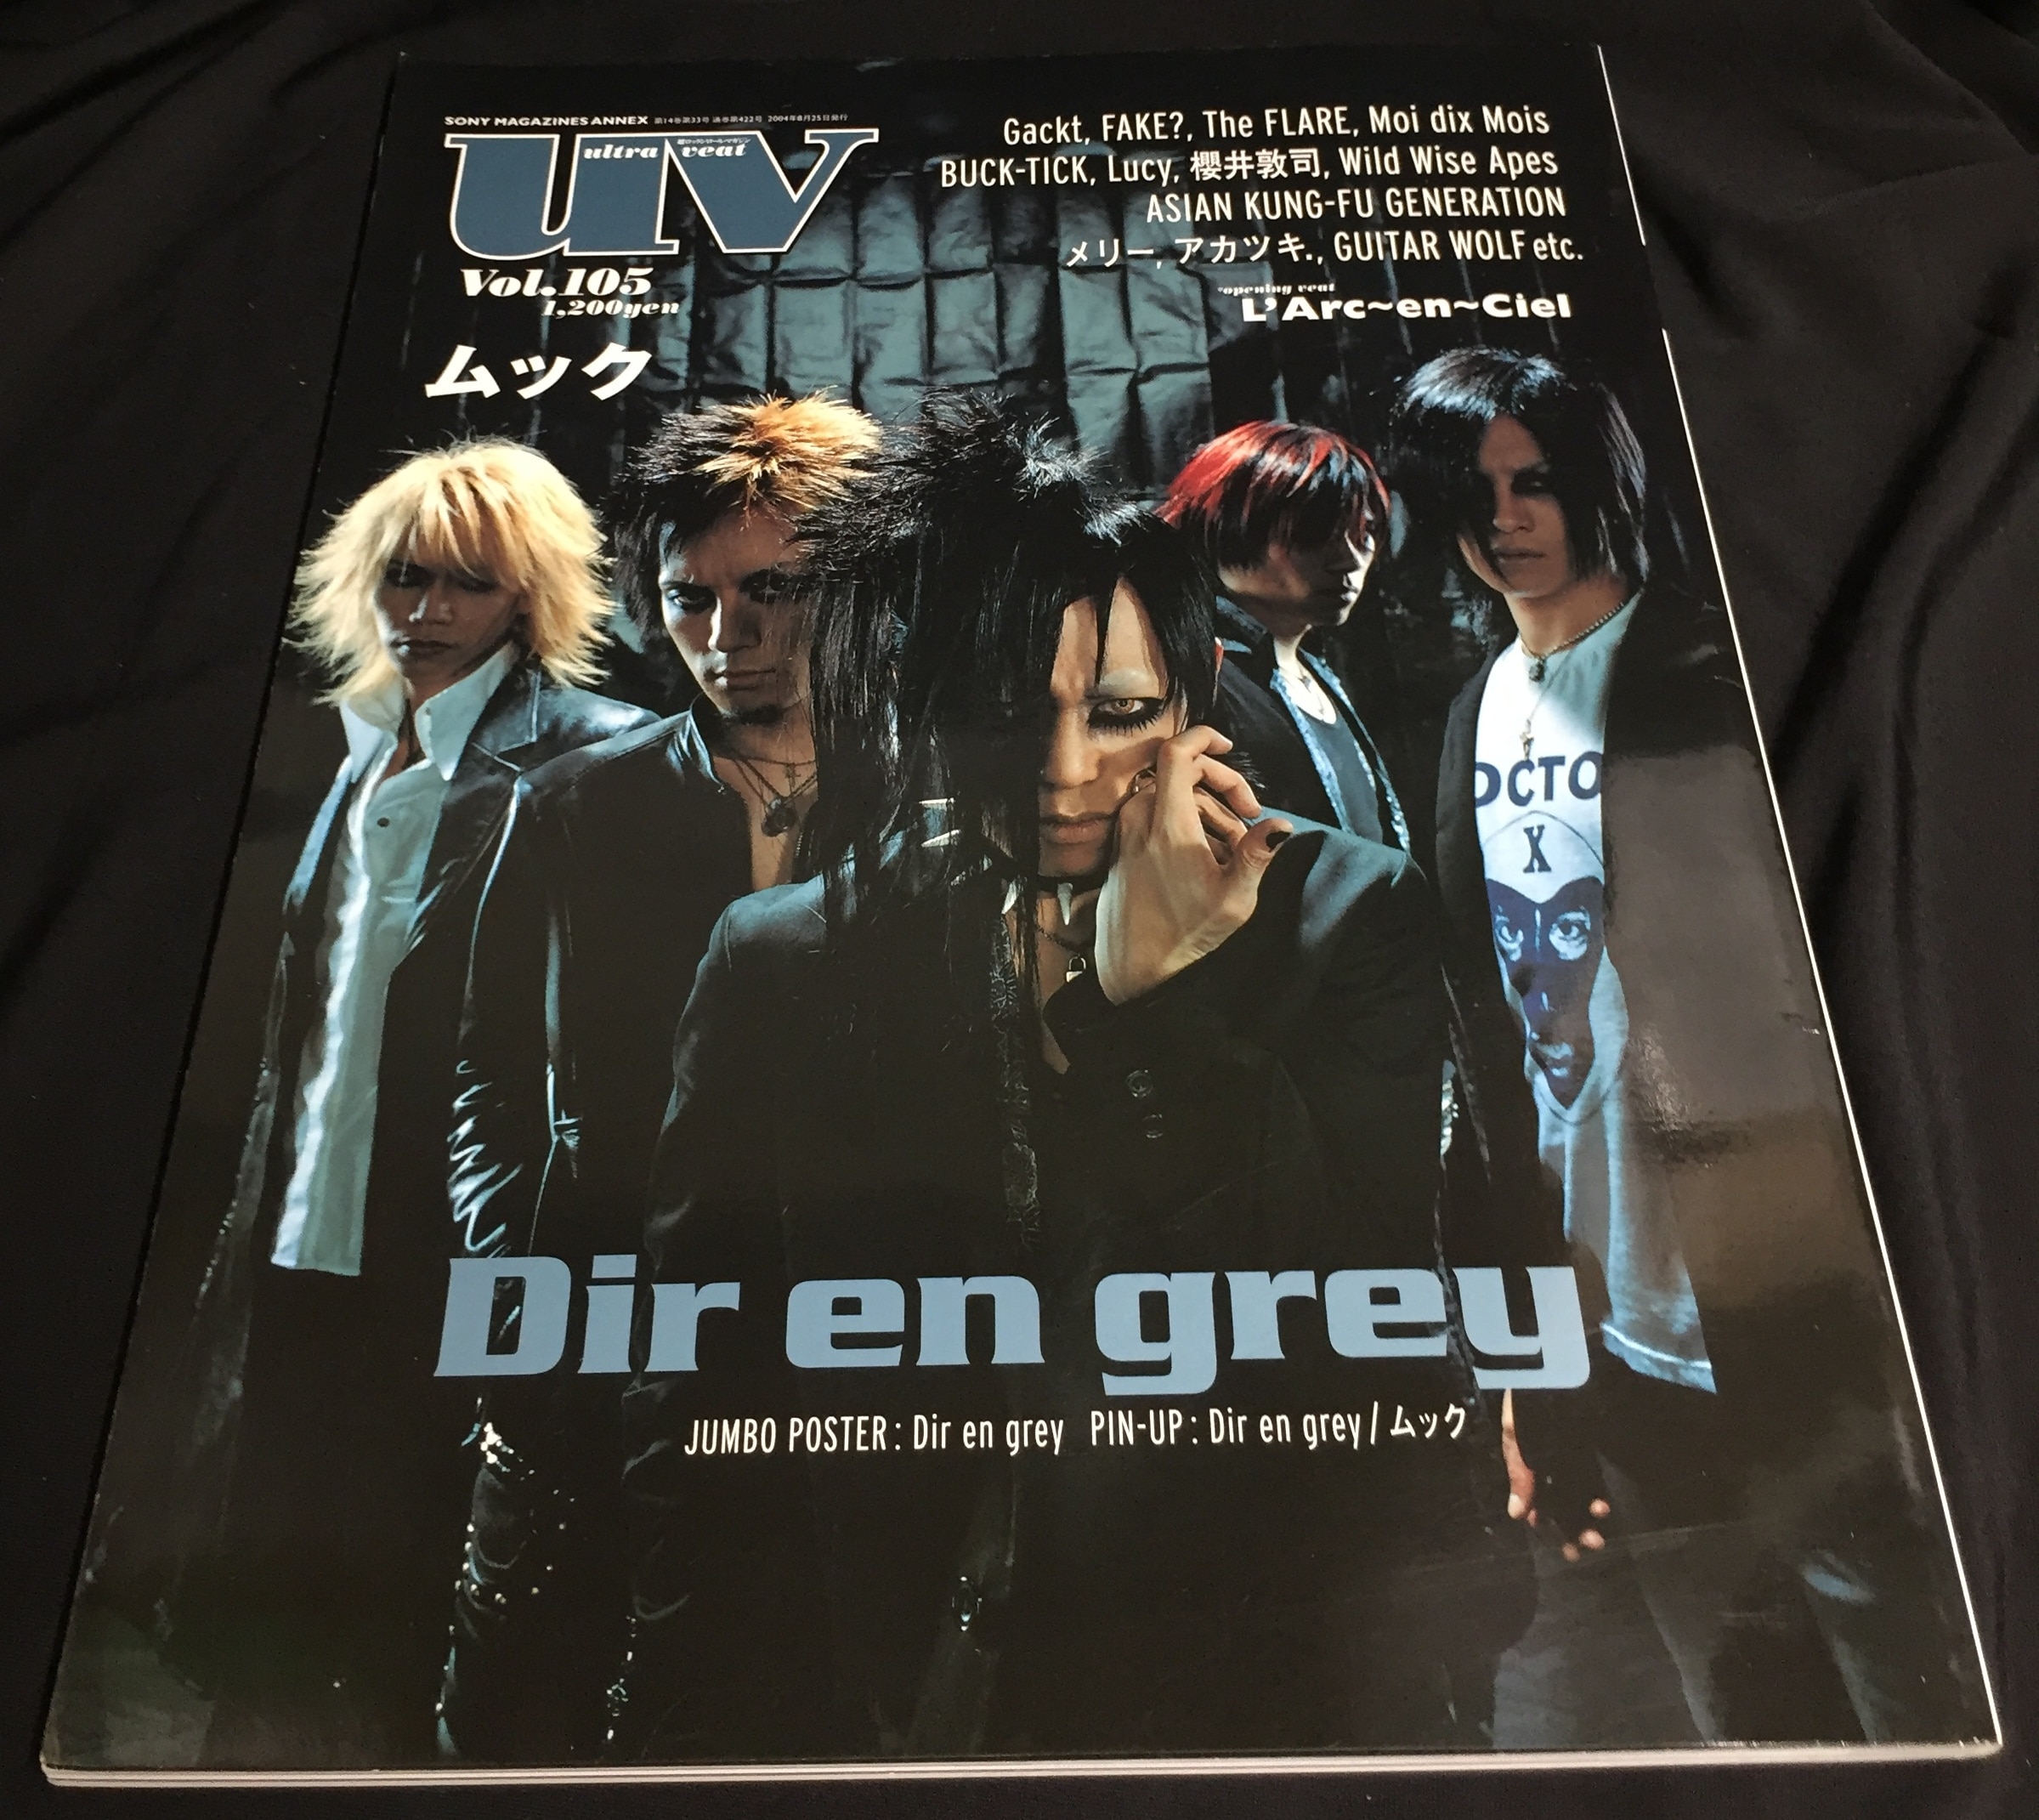 Dir en grey/ムック 2004年8月25日発行/雑誌 uv (ultra veat) Vol.105 